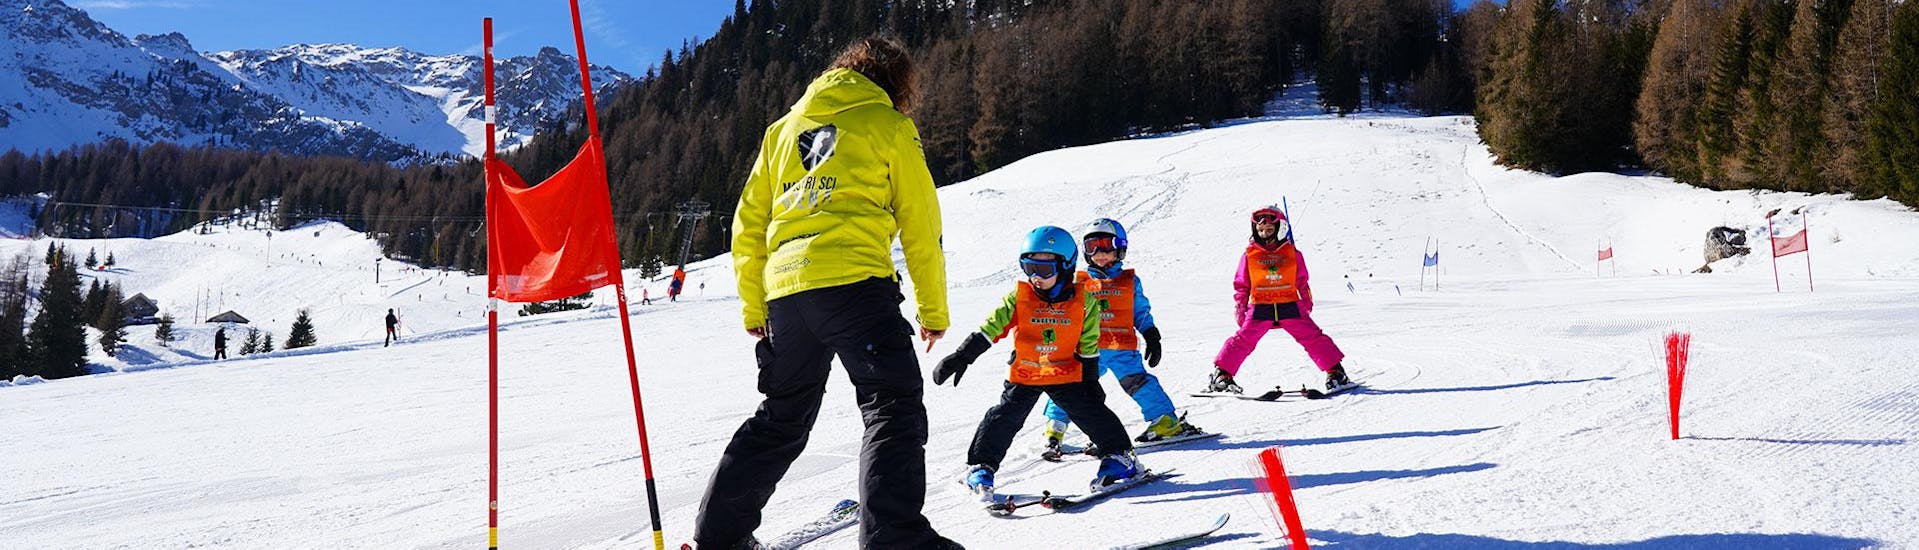 Lezioni di sci per bambini (3-5 anni) principianti.